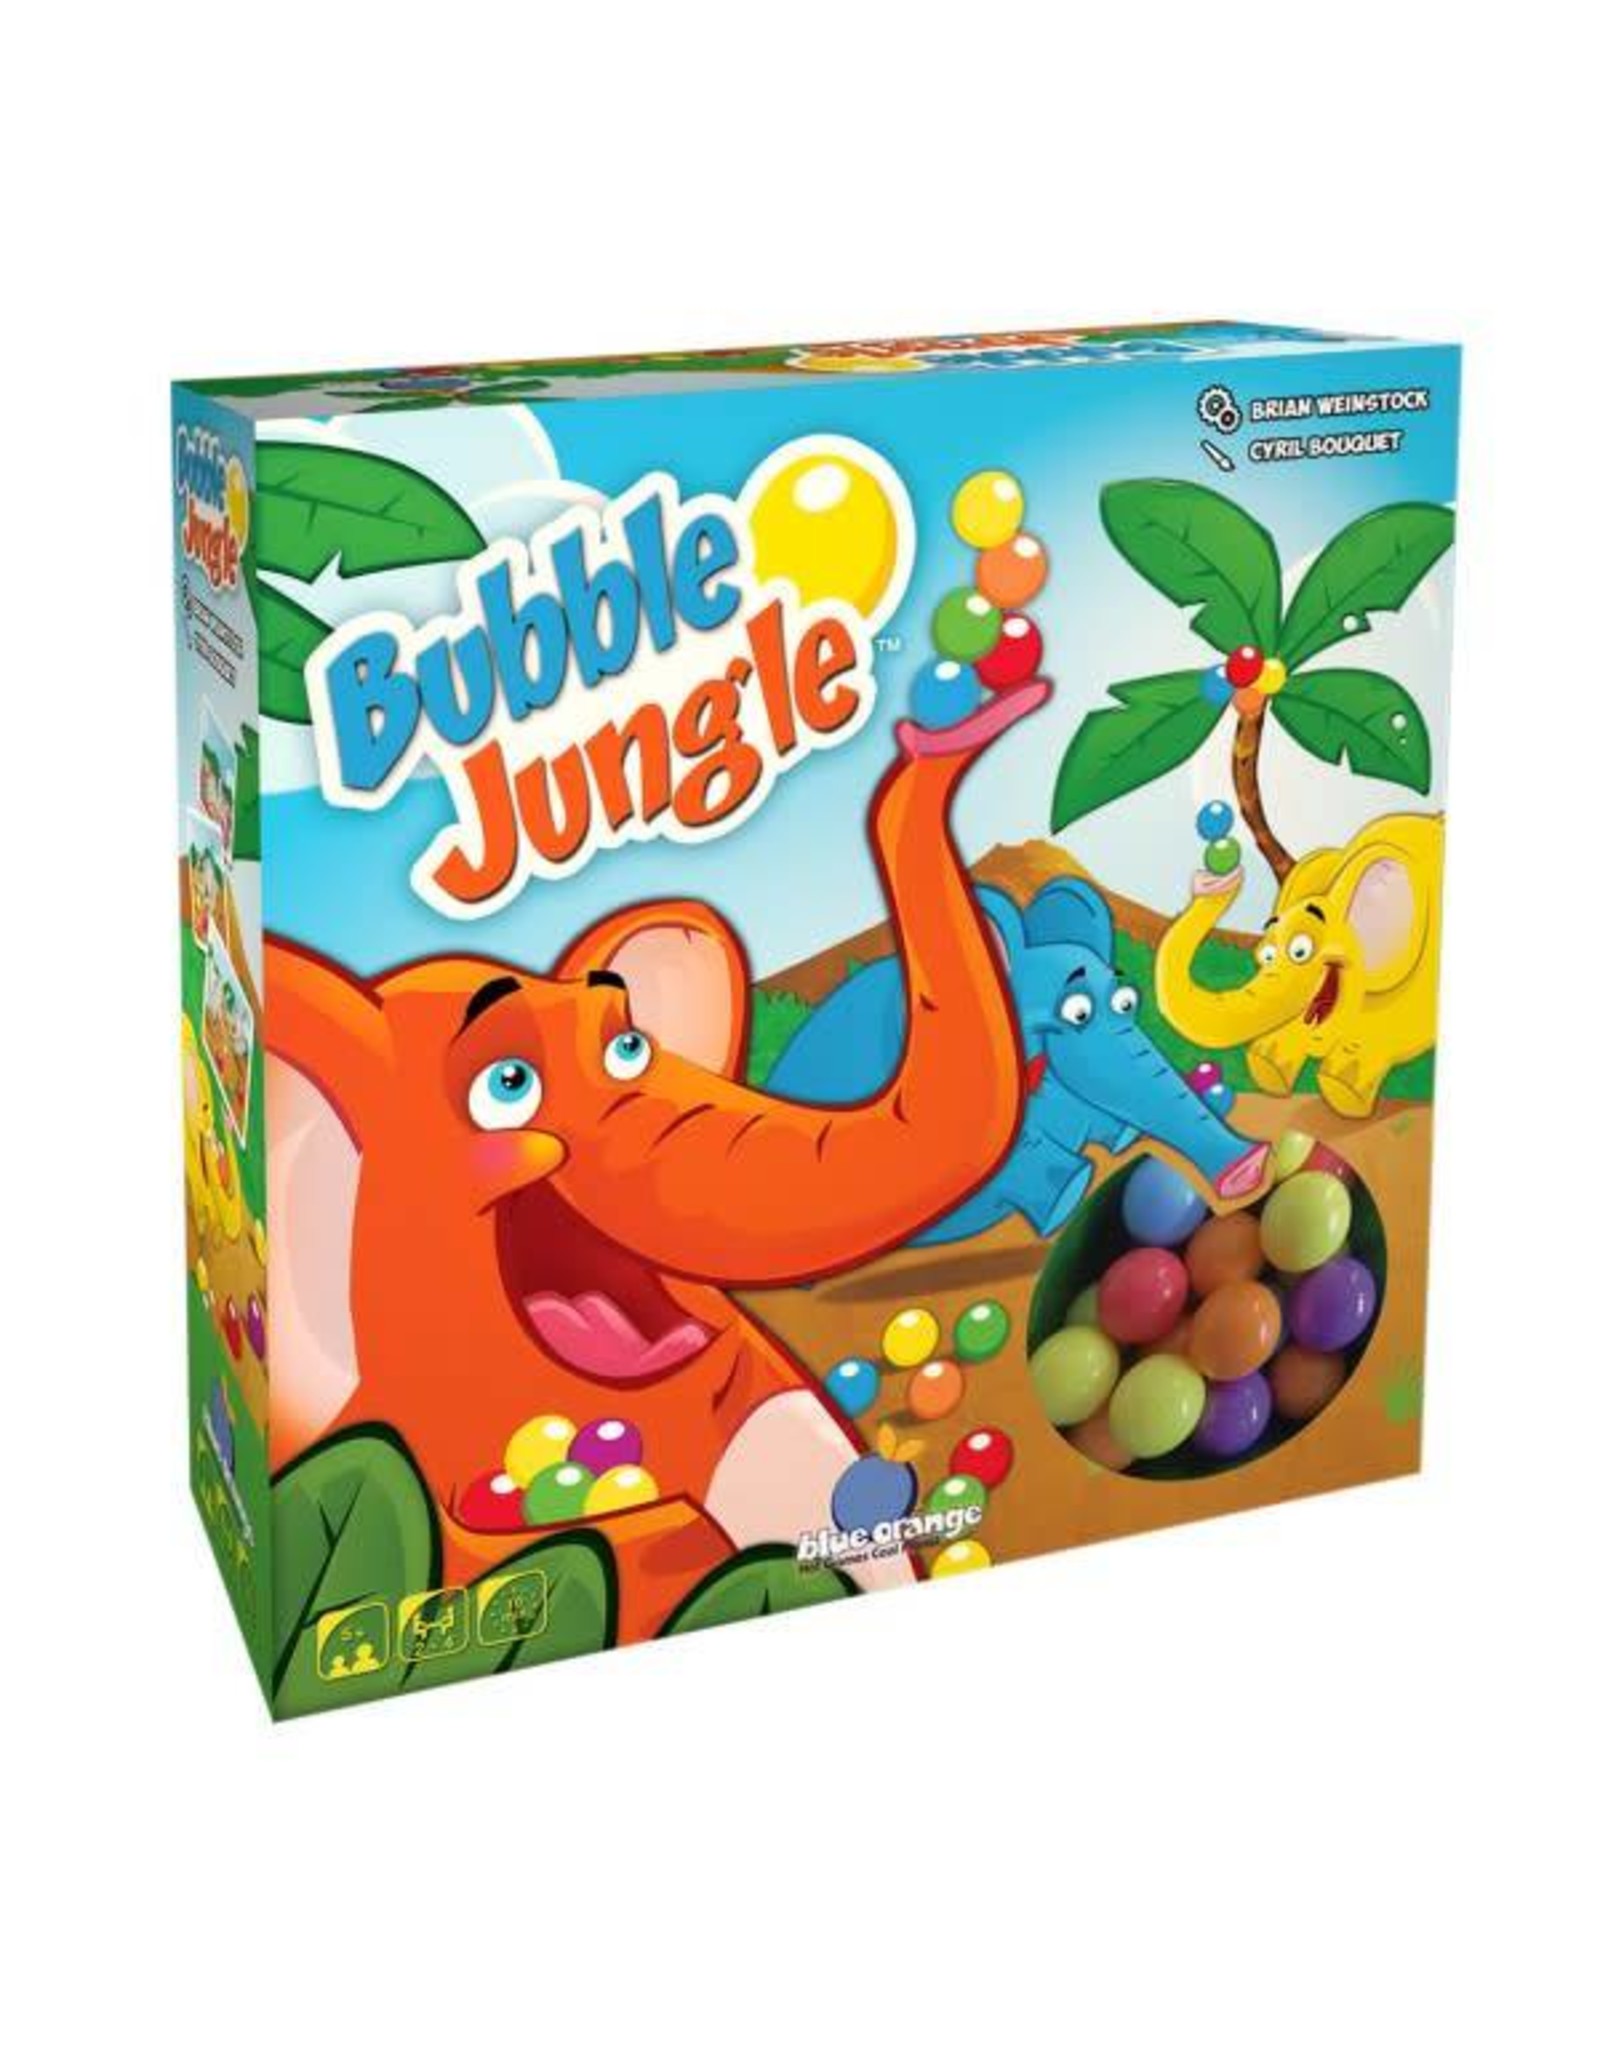 Jungle speed jeu de main - Jeux de société et stratégie - JEUX, JOUETS -   - Livres + cadeaux + jeux